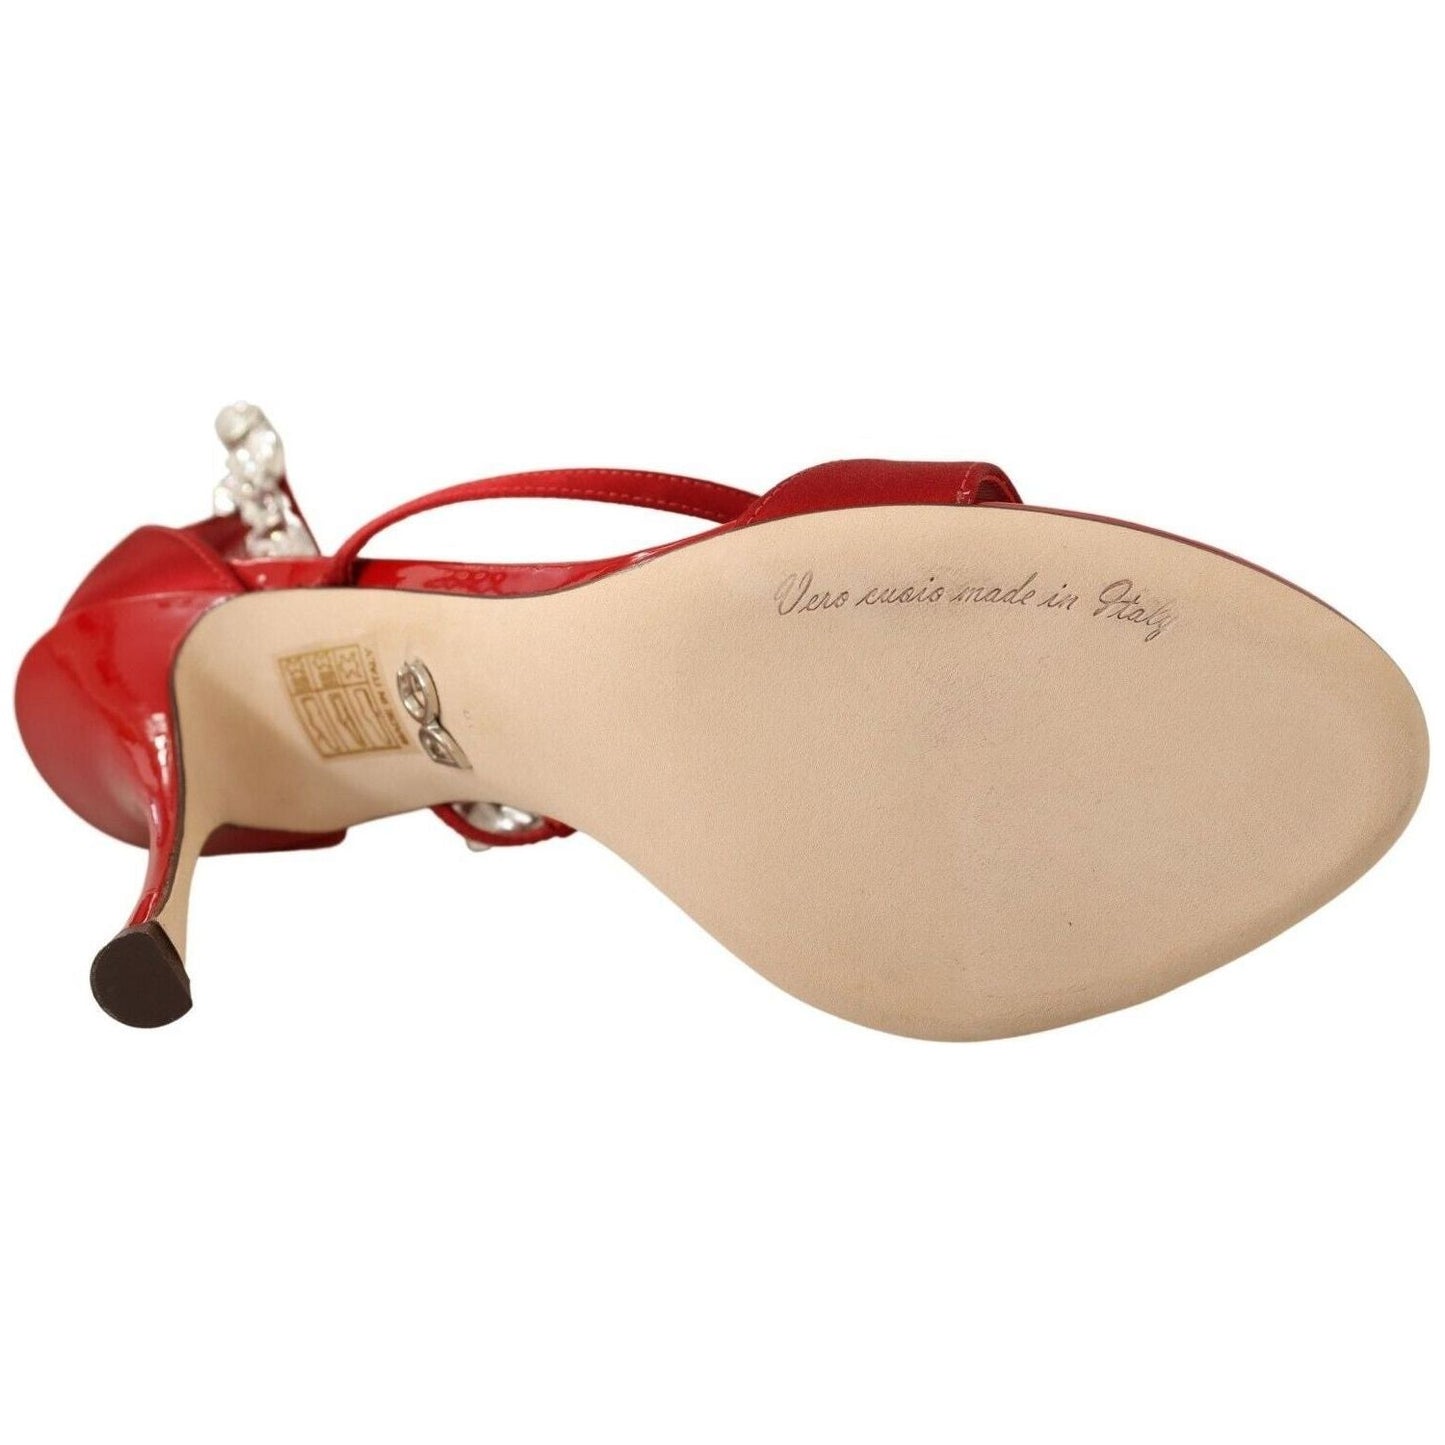 Dolce & Gabbana Red Crystal-Embellished Heel Sandals red-satin-crystals-sandals-keira-heels-shoes Heeled Sandals s-l1600-2022-11-15T152023.743-302d3447-f1e.jpg